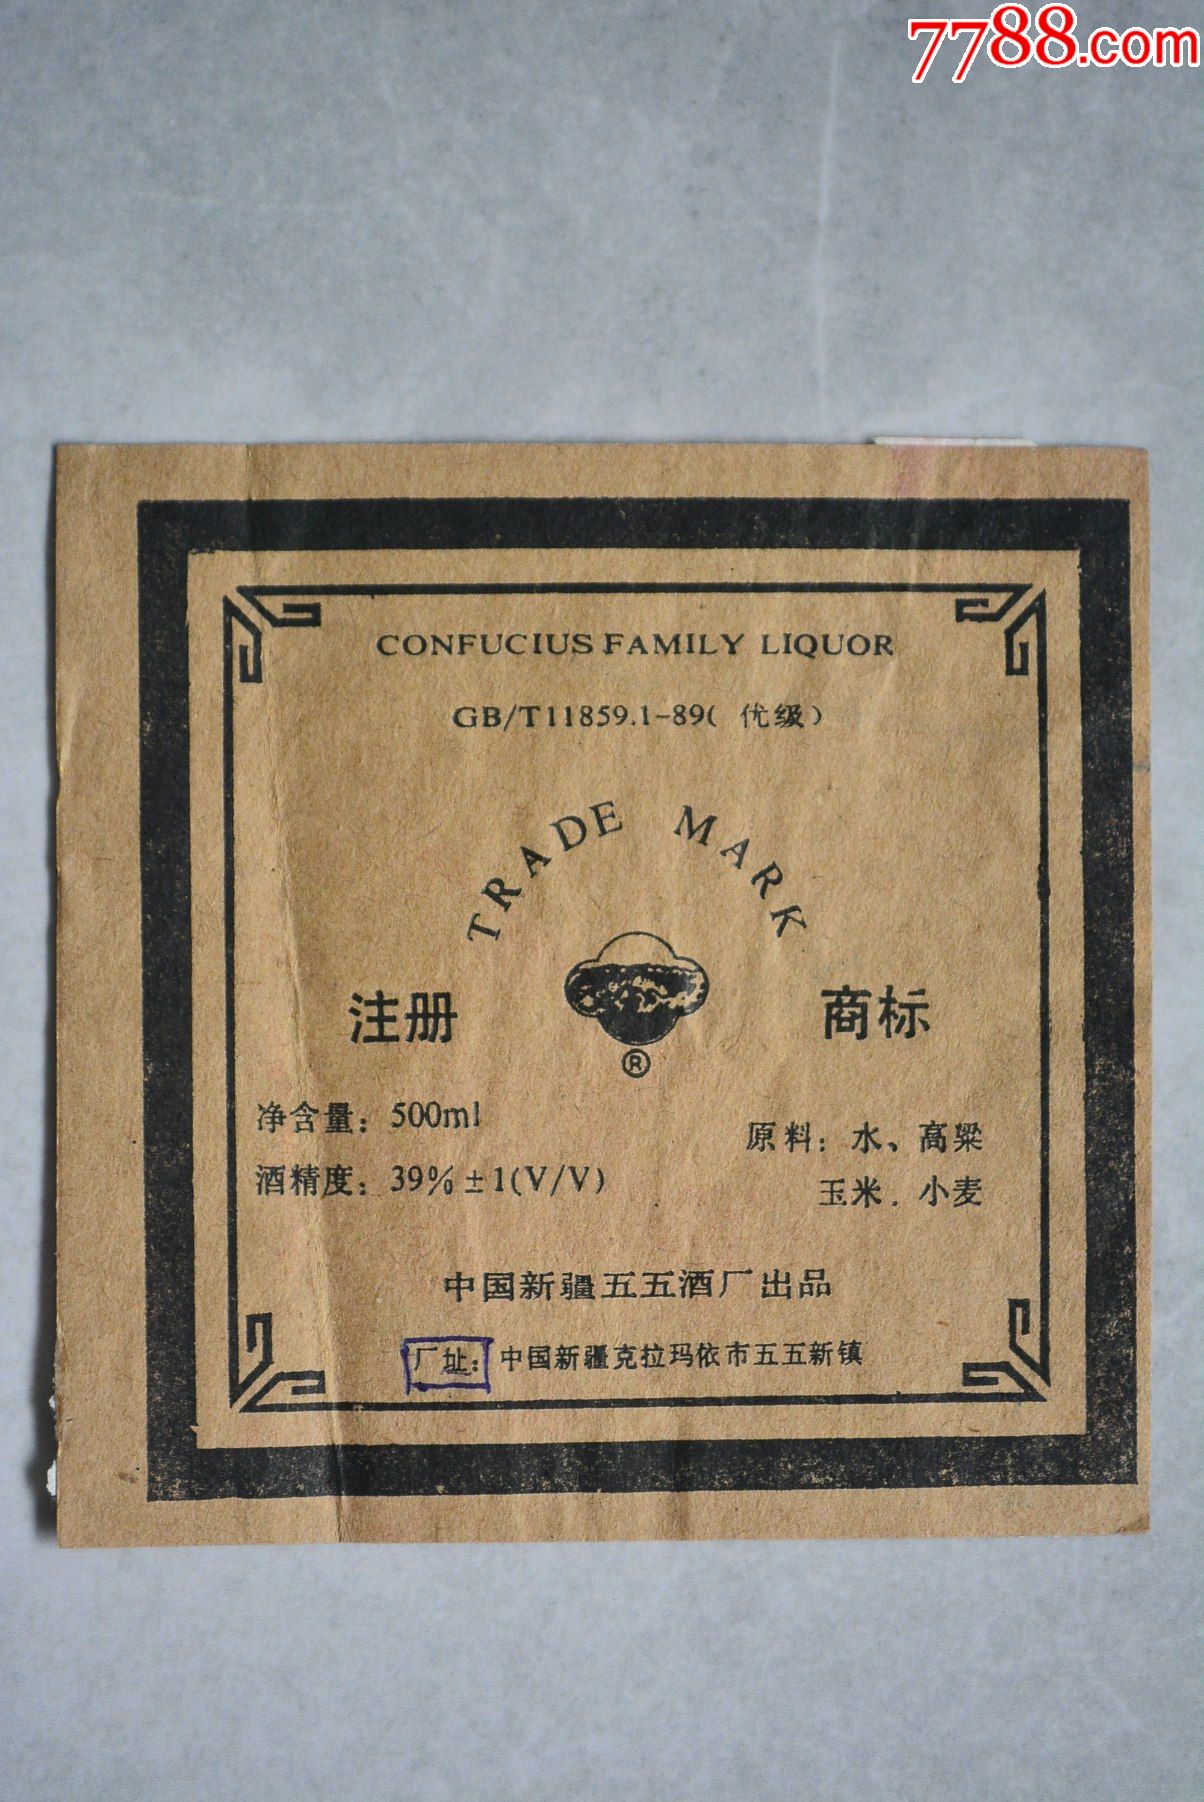 刘晓燕杂面条商标图片